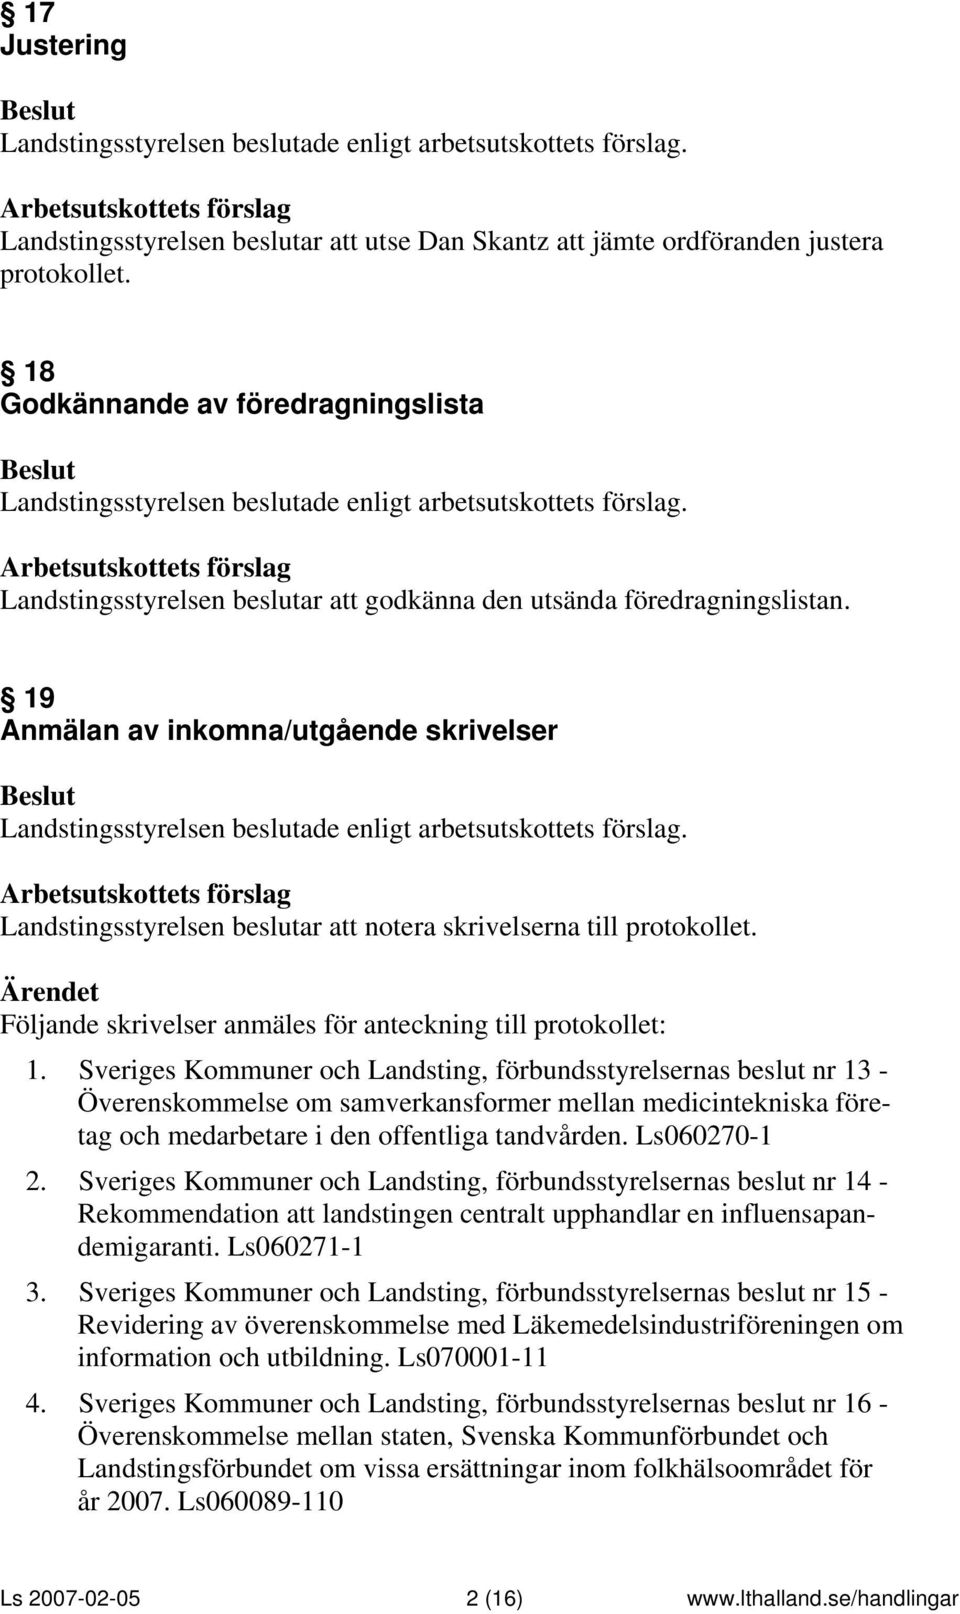 Sveriges Kommuner och Landsting, förbundsstyrelsernas beslut nr 13 - Överenskommelse om samverkansformer mellan medicintekniska företag och medarbetare i den offentliga tandvården. Ls060270-1 2.